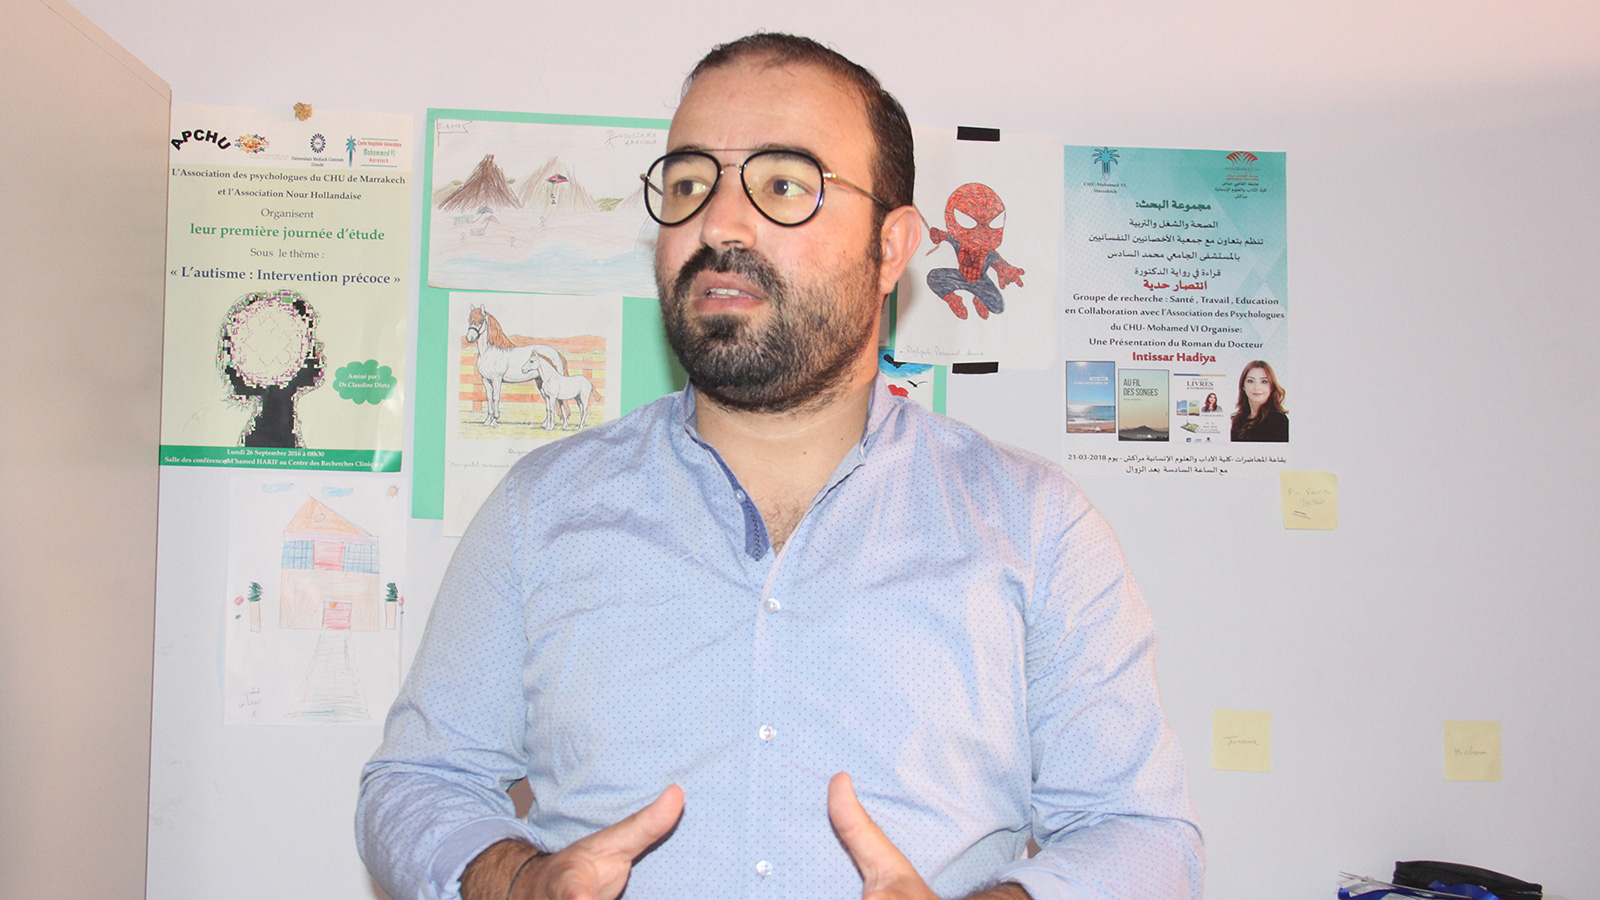 ‪الدكتور كريم حميد: من صميم عملي أن أقدم الدعم النفسي للمرضى وأيضا لزملائي في العمل‬ (الجزيرة)